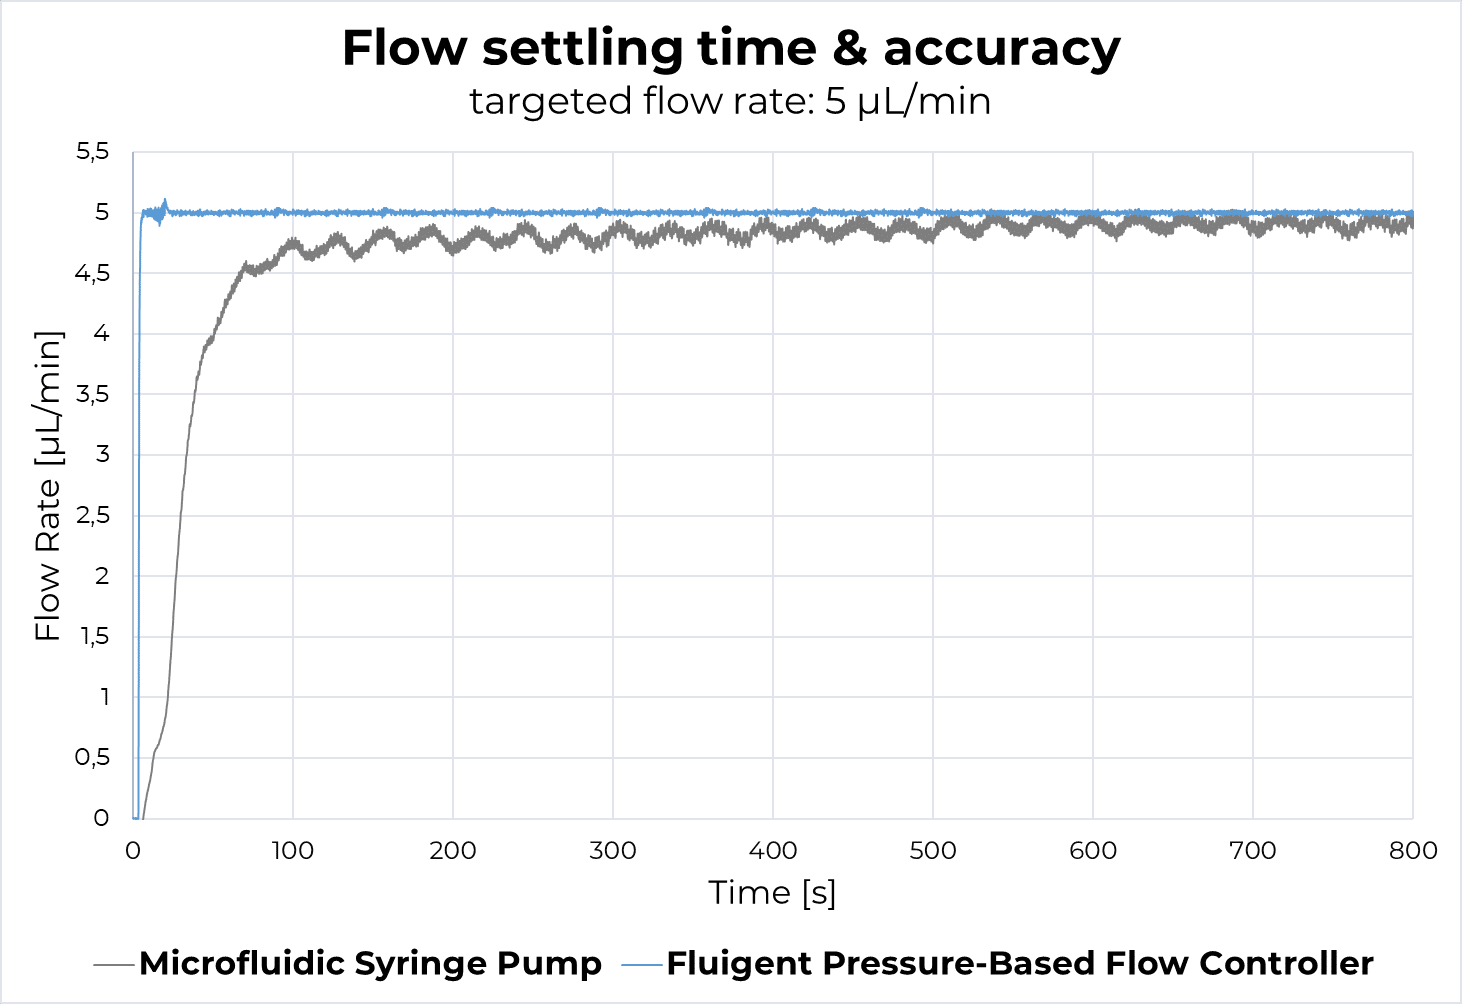 flow settling time syringe pump vs pessure controller